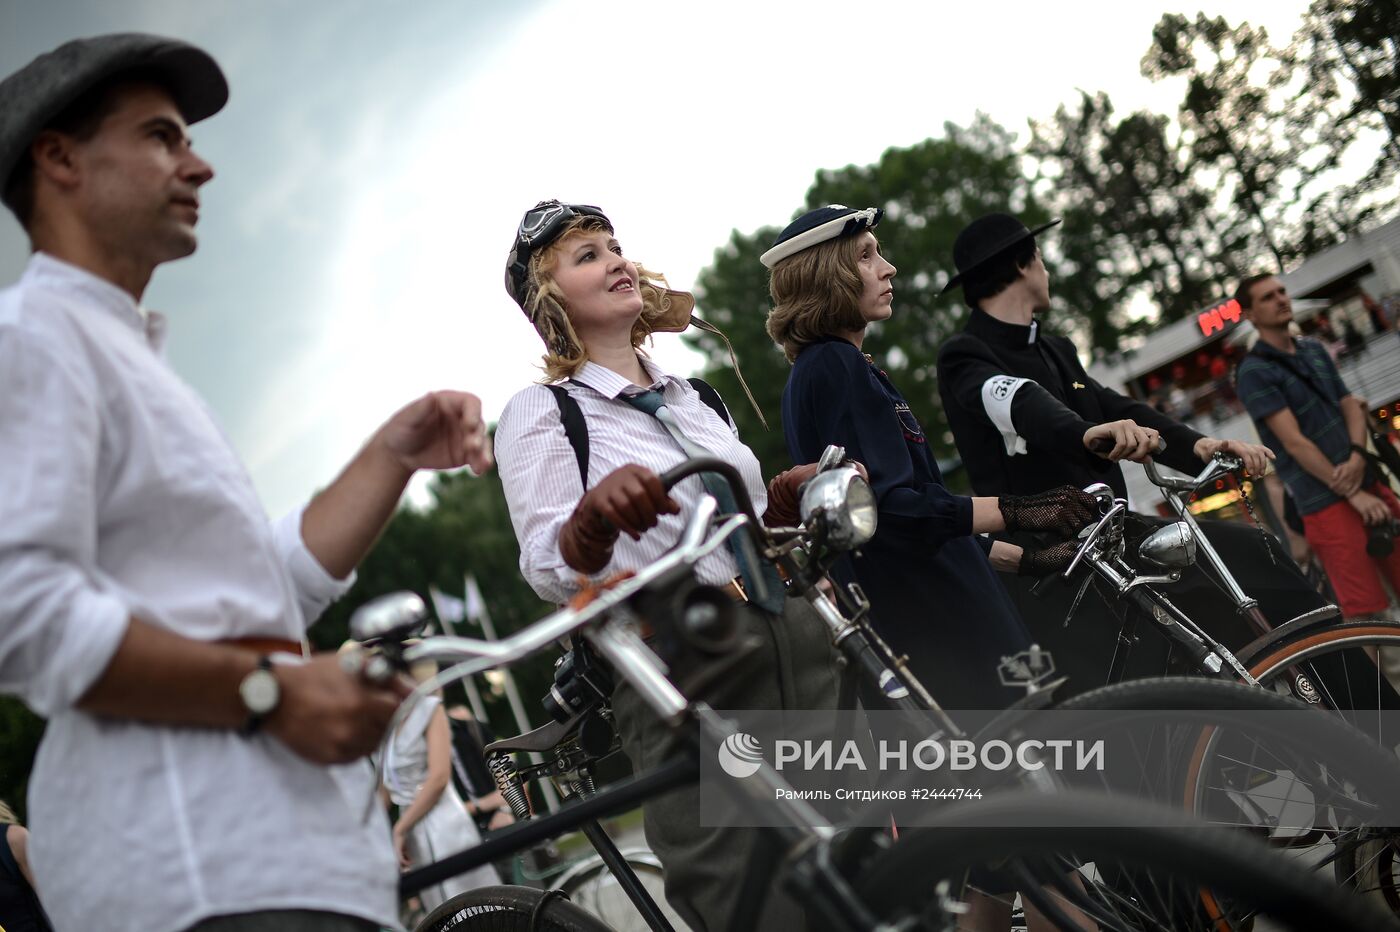 Исторический велопробег в парке "Сокольники" в Москве